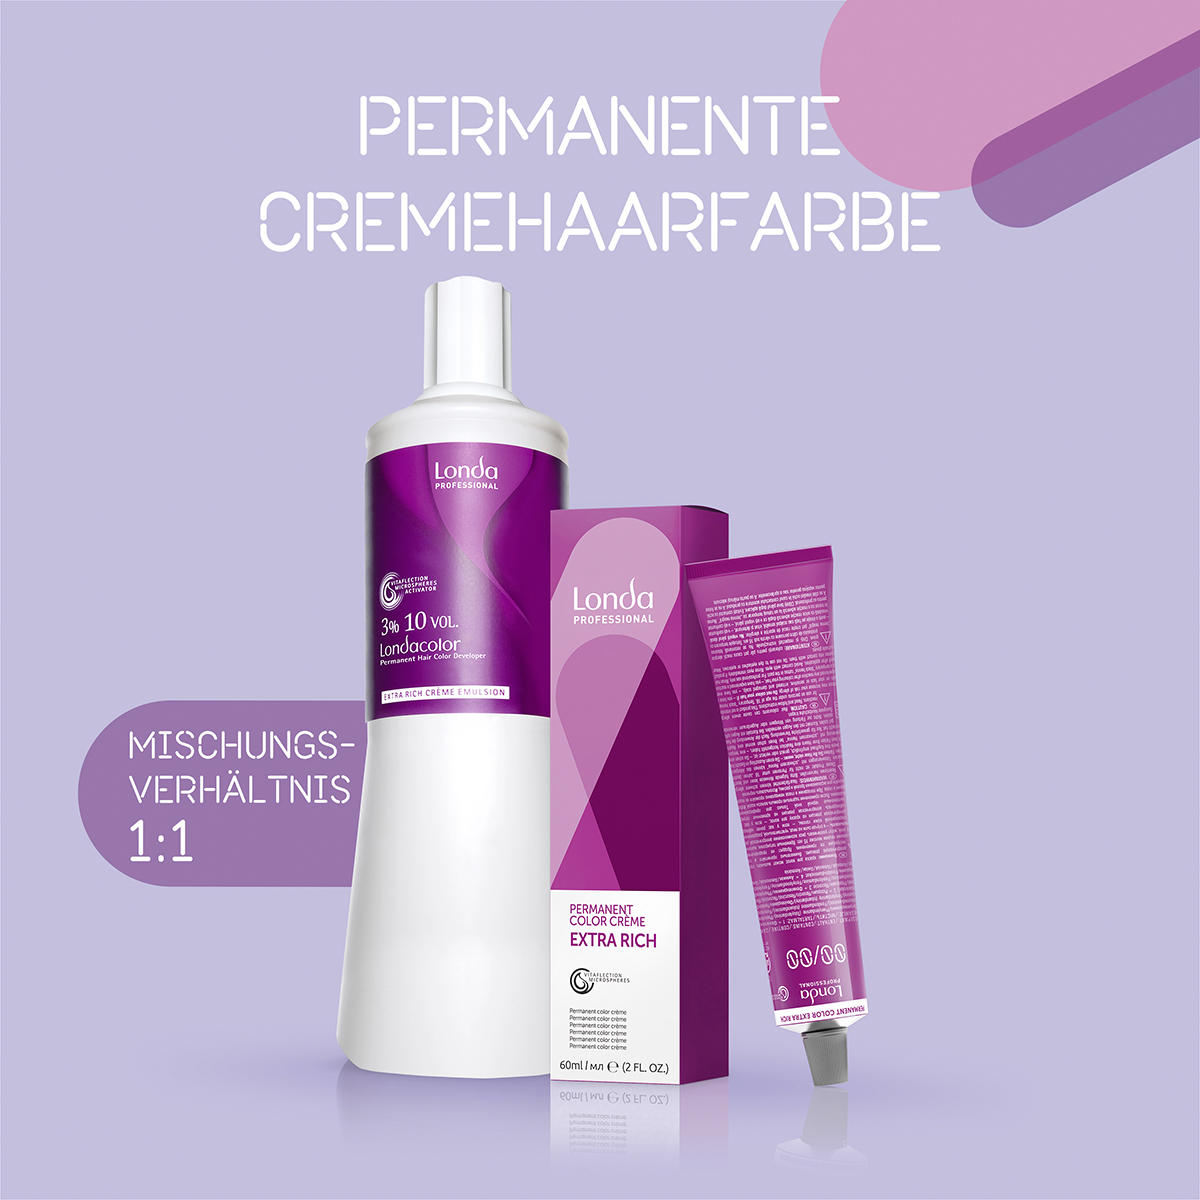 Londa Permanente Cremehaarfarbe Extra Rich 9/16 Lichtblond Asch Violett, Tube 60 ml - 5